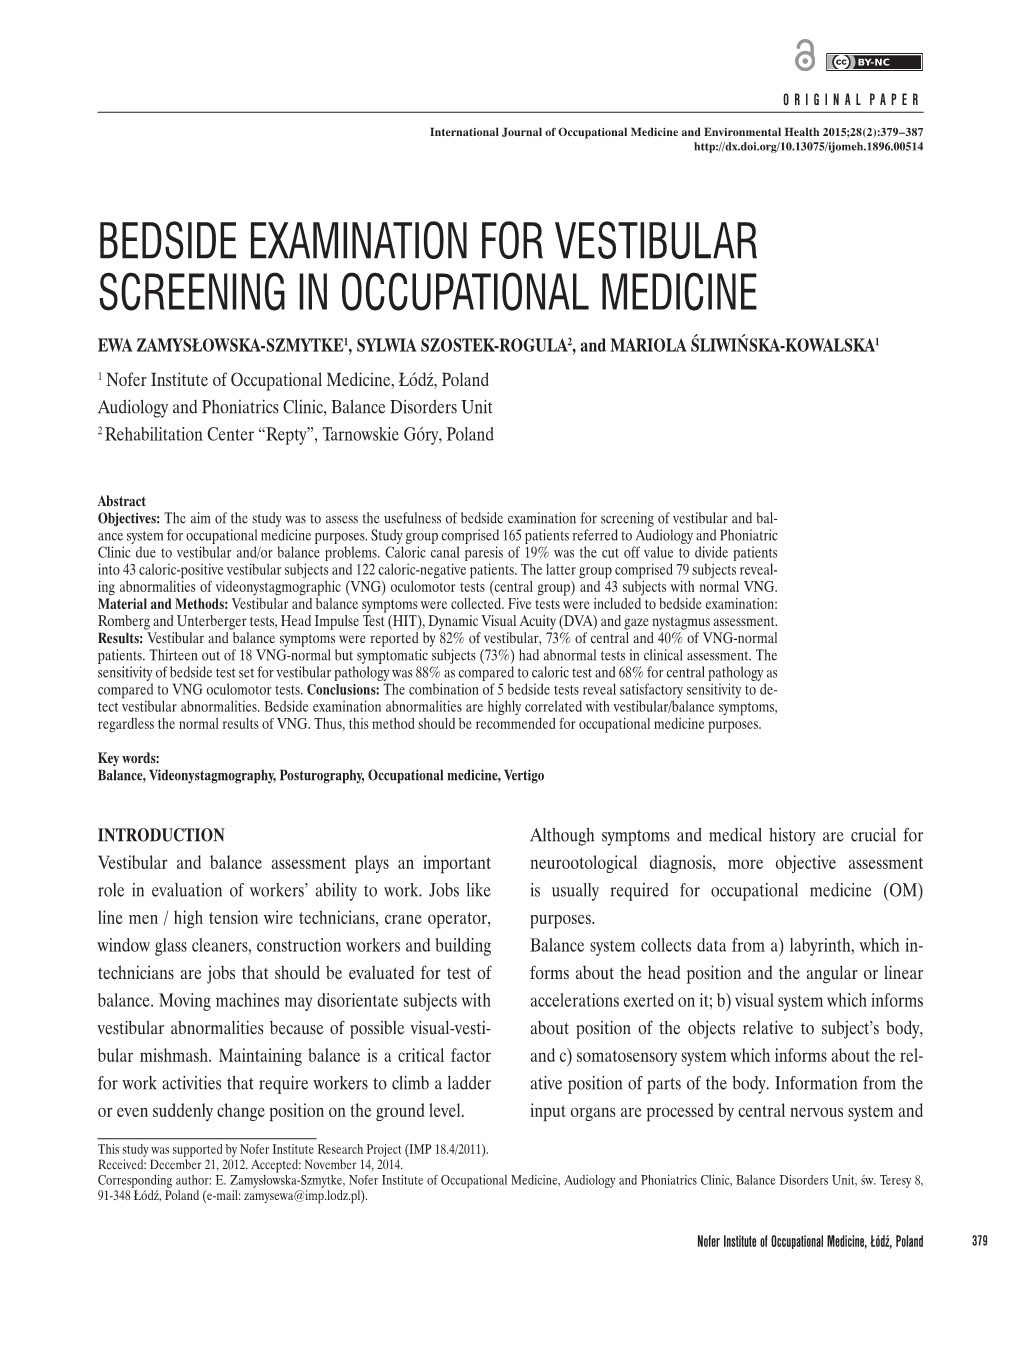 Bedside Examination for Vestibular Screening In